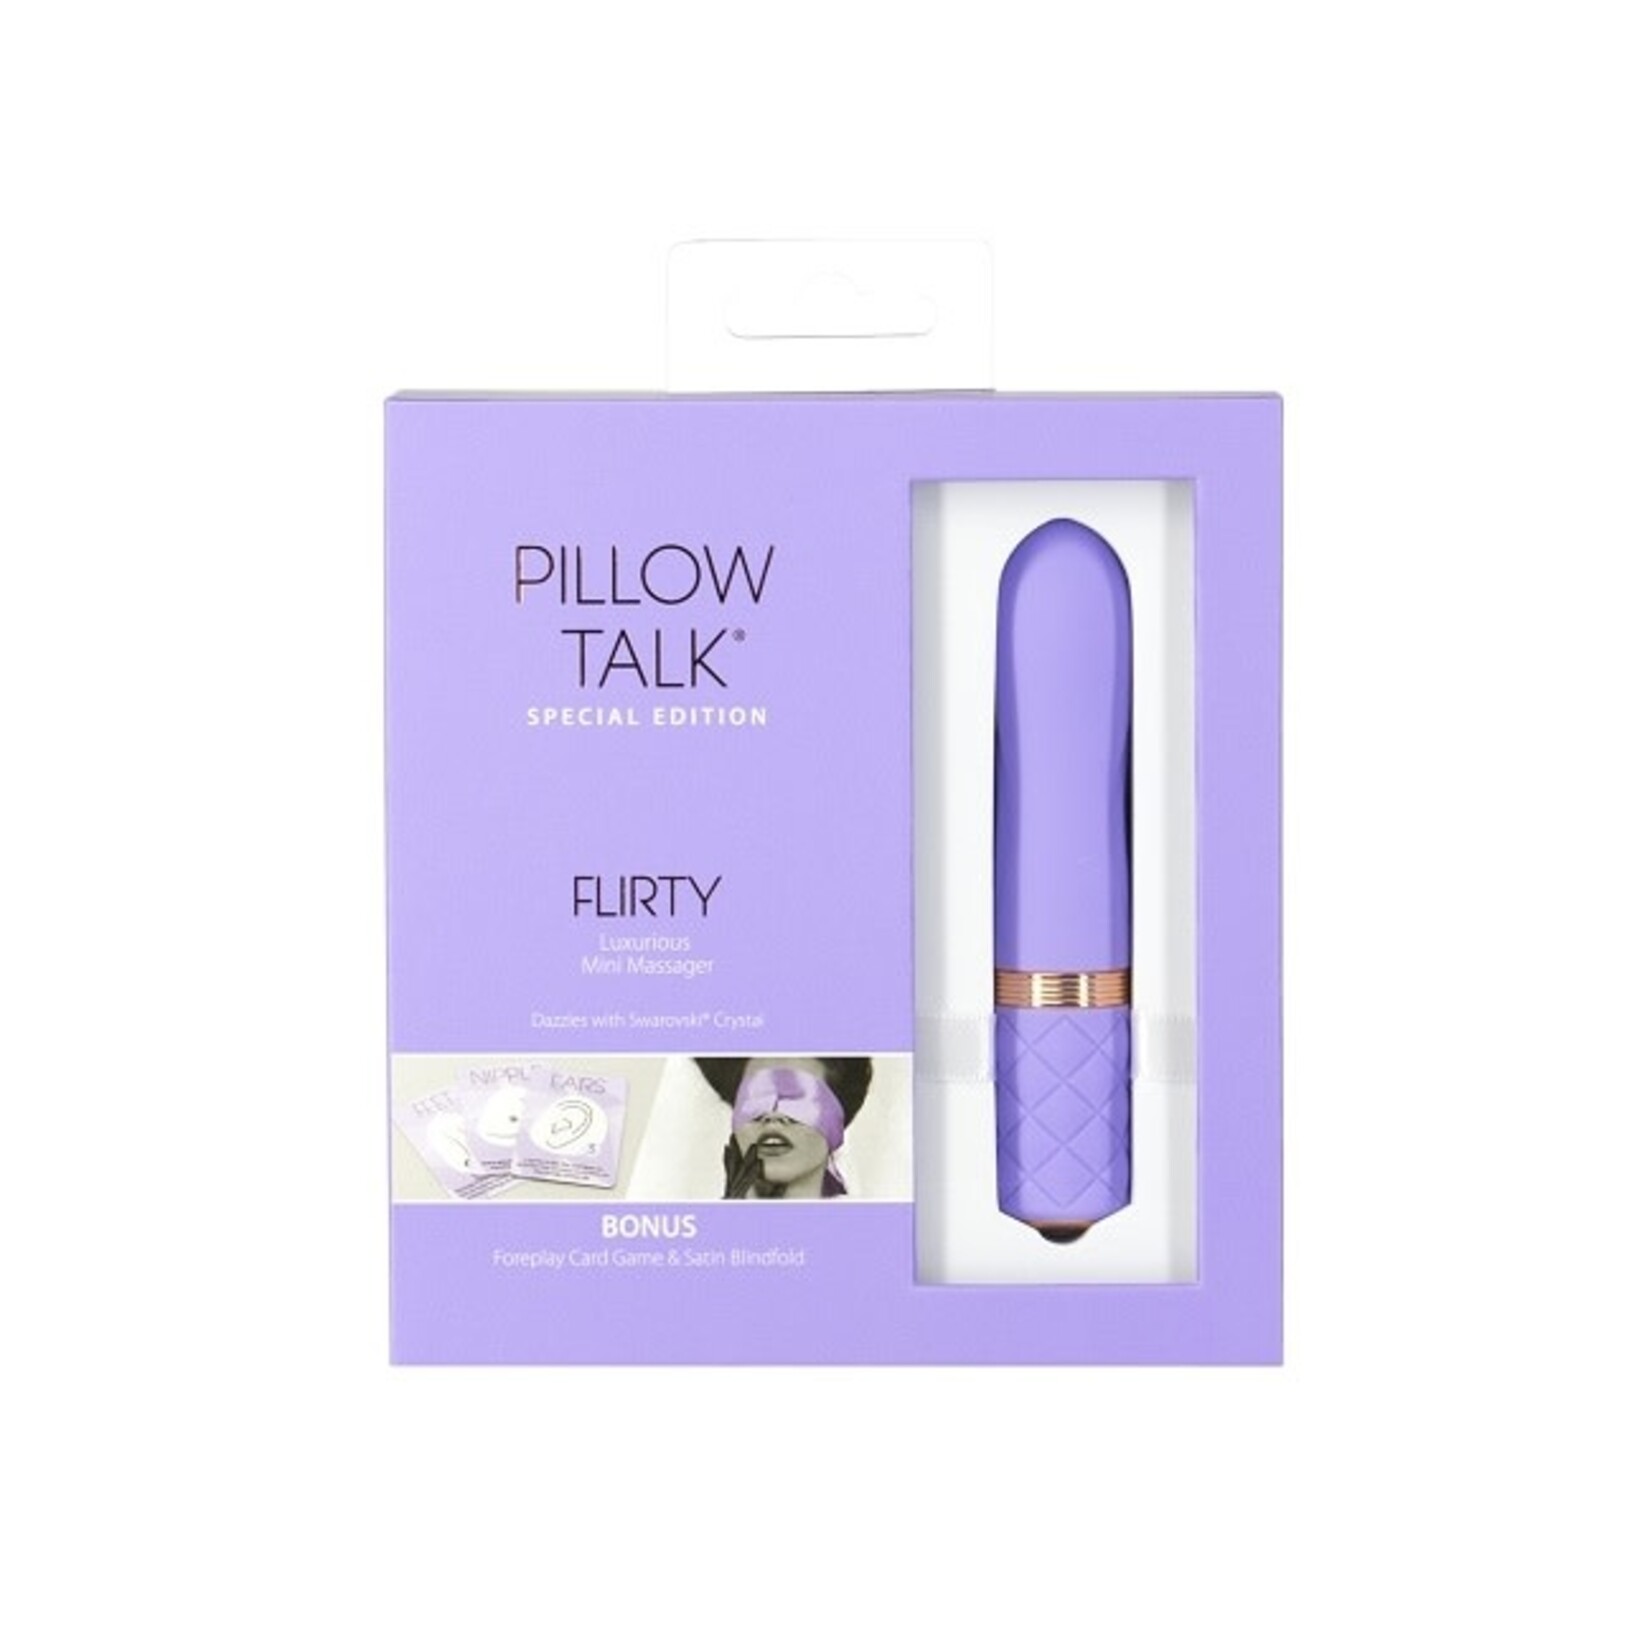 Pillow Talk Pillow Talk Special Edition Flirty Mini Massager